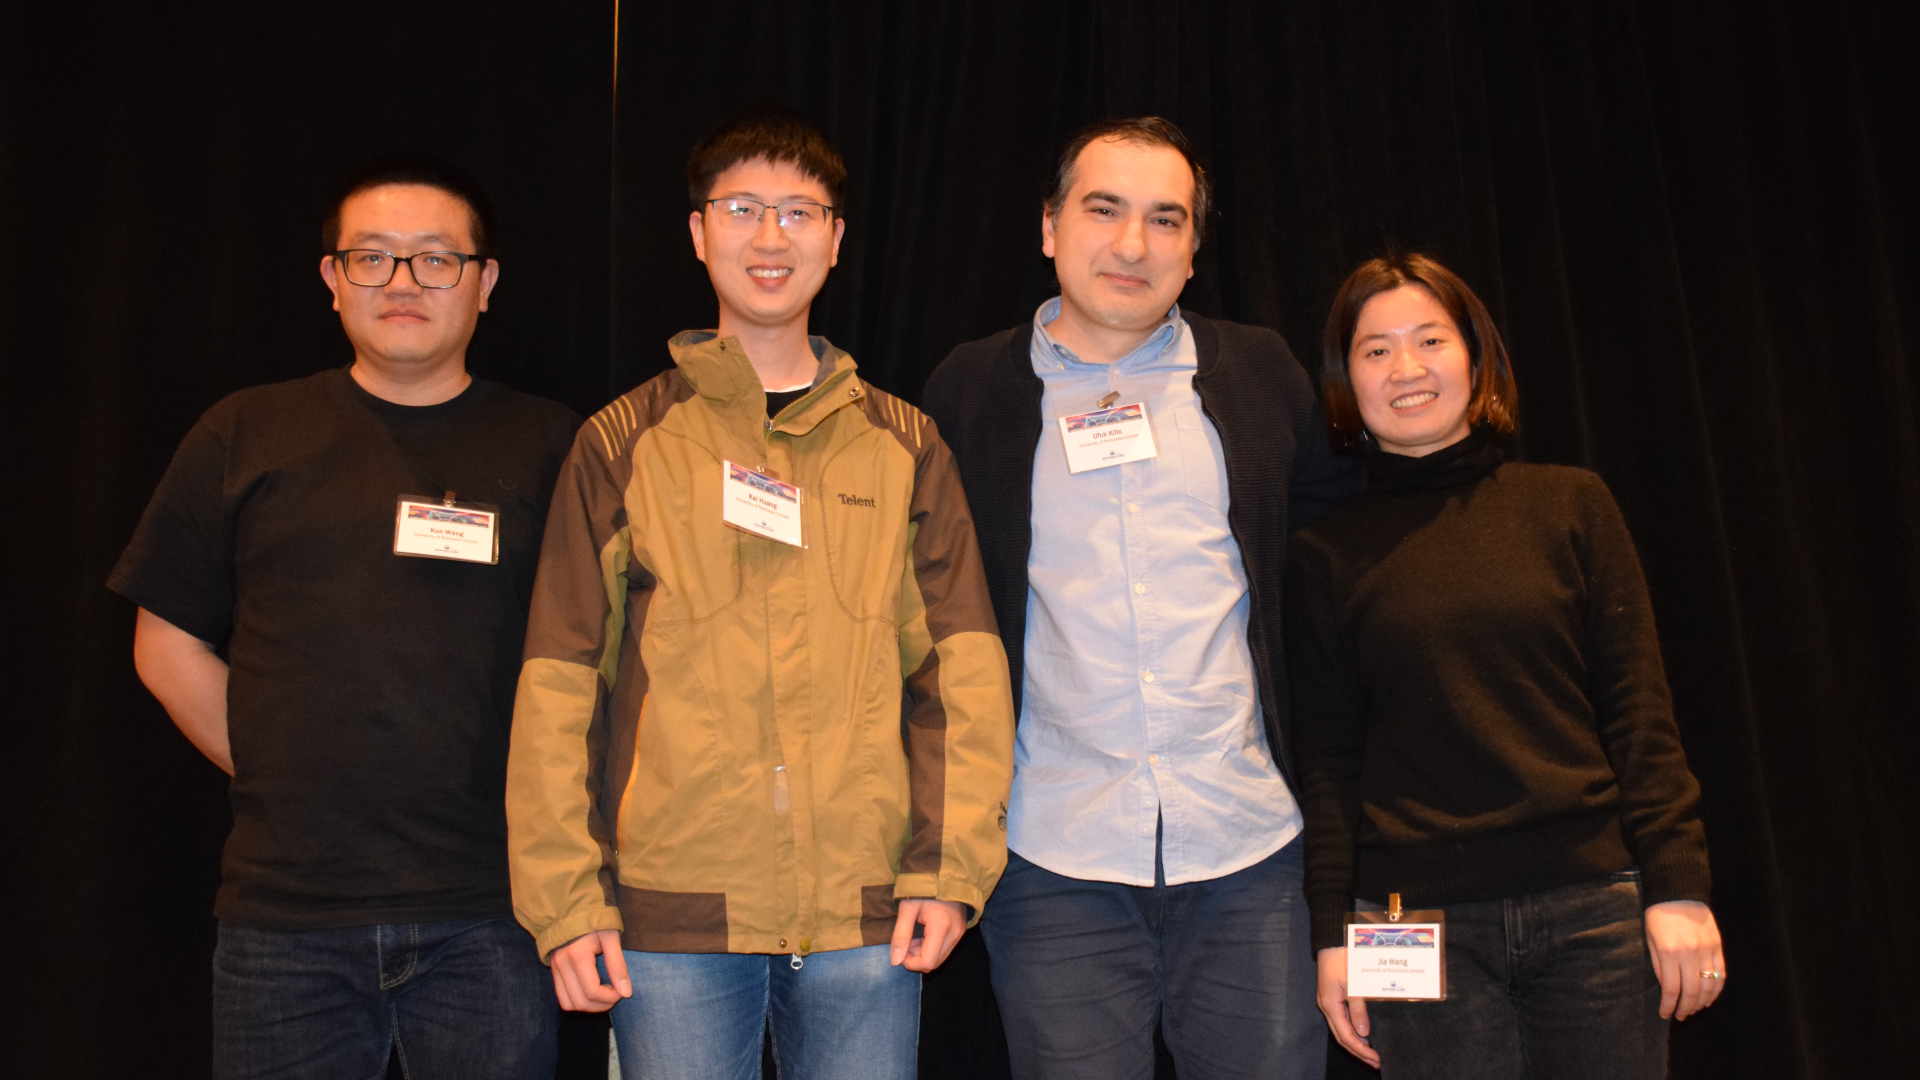 NRIC 2023 poster award recipients included (from left) Kun Wang, Kai Huang, Ufuk Kilic, and Jia Wang.